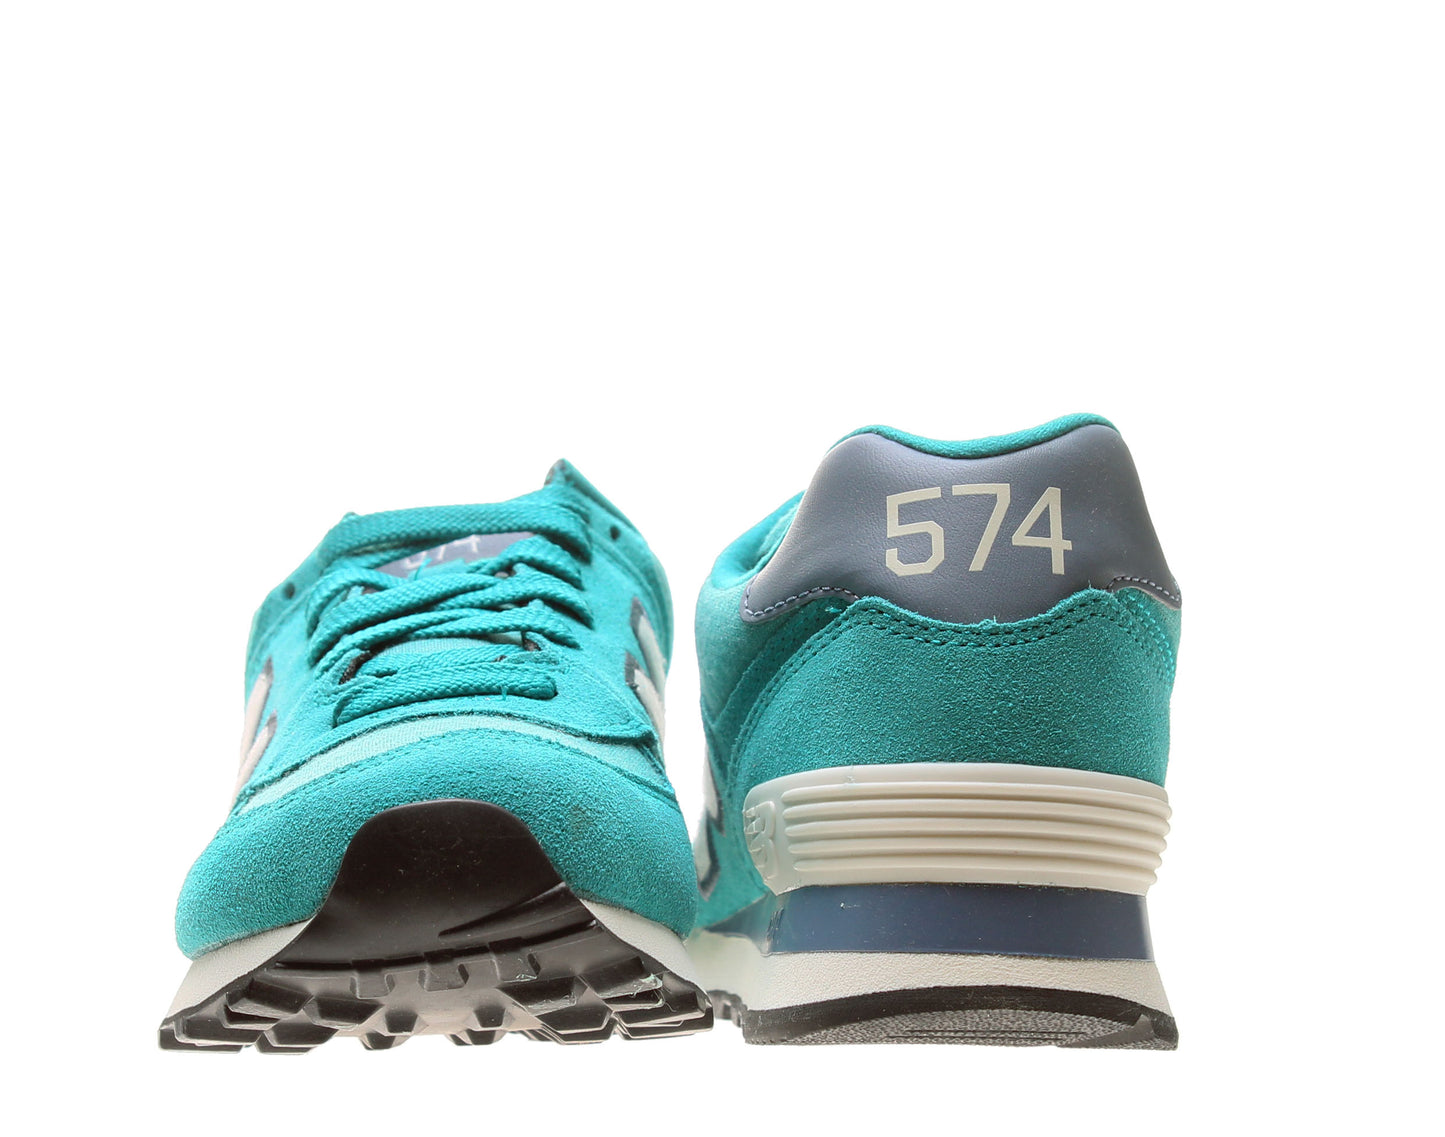 New Balance 574 Women's Running Sneakers